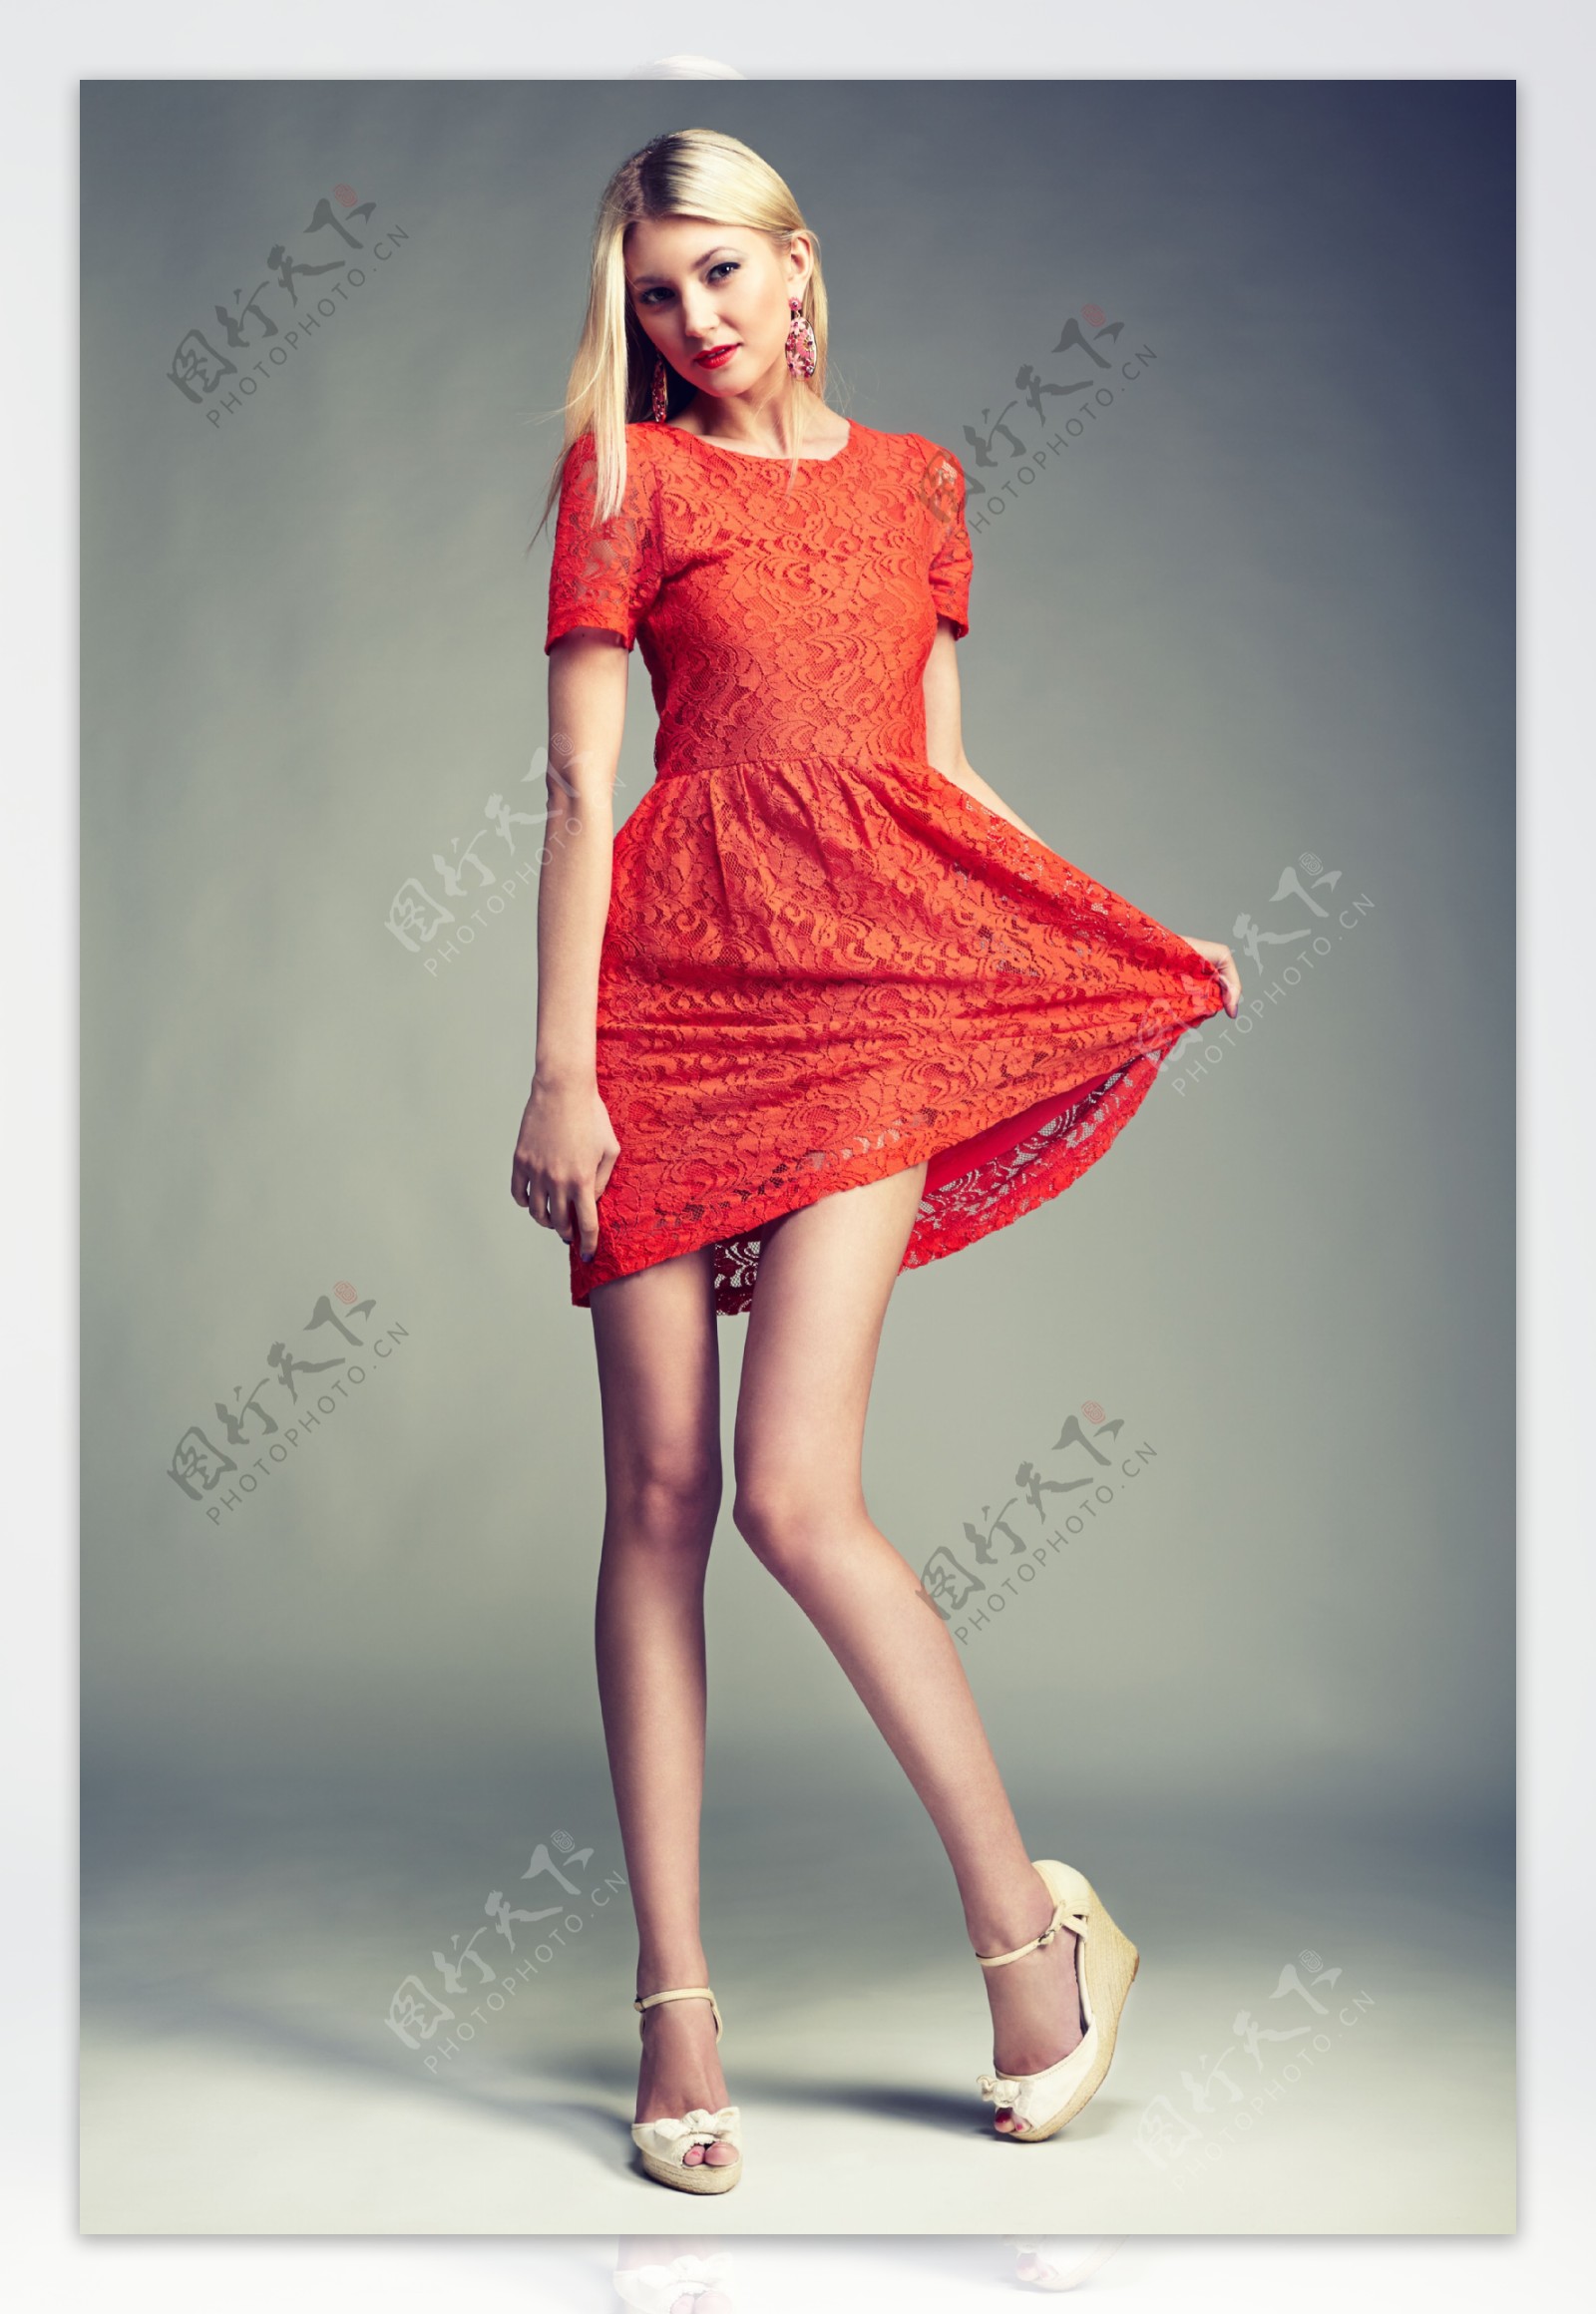 时尚红裙美女图片